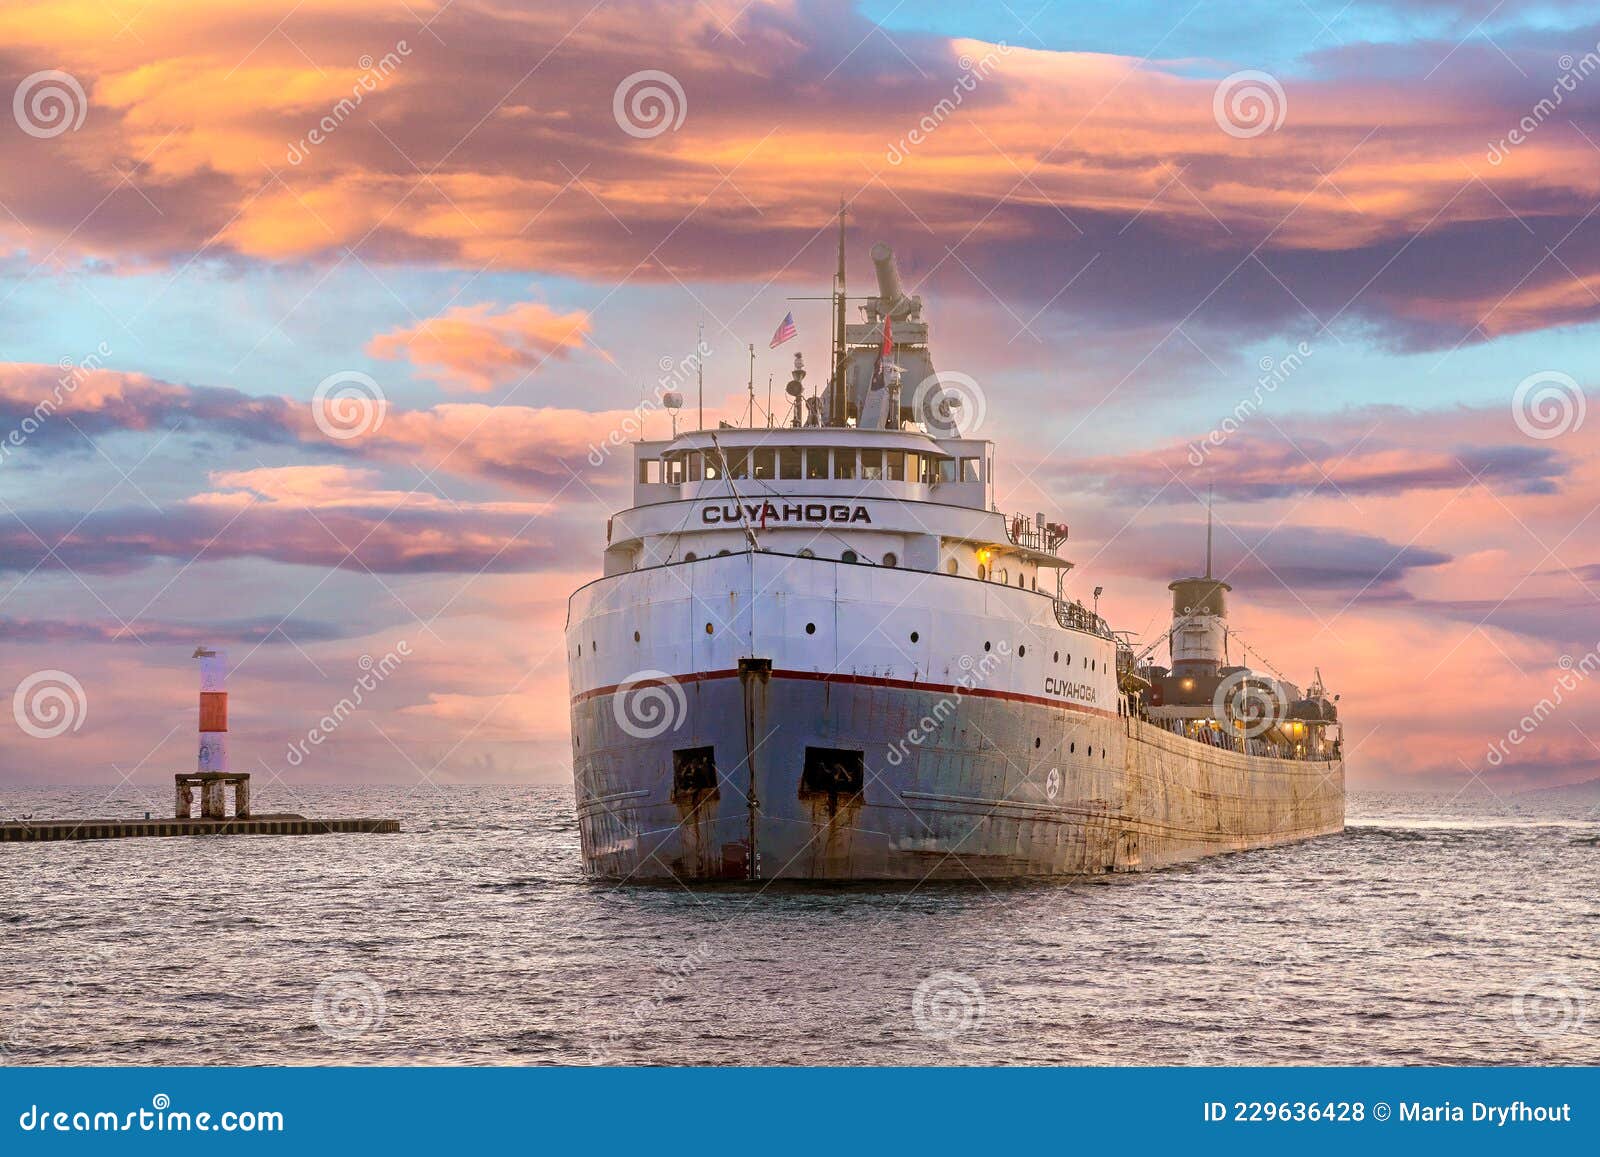 фрахтователь в большой озерной гавани. Койахога-грузовой корабль, входящий в гавань Голландия в холлендском микрорайоне во время заката